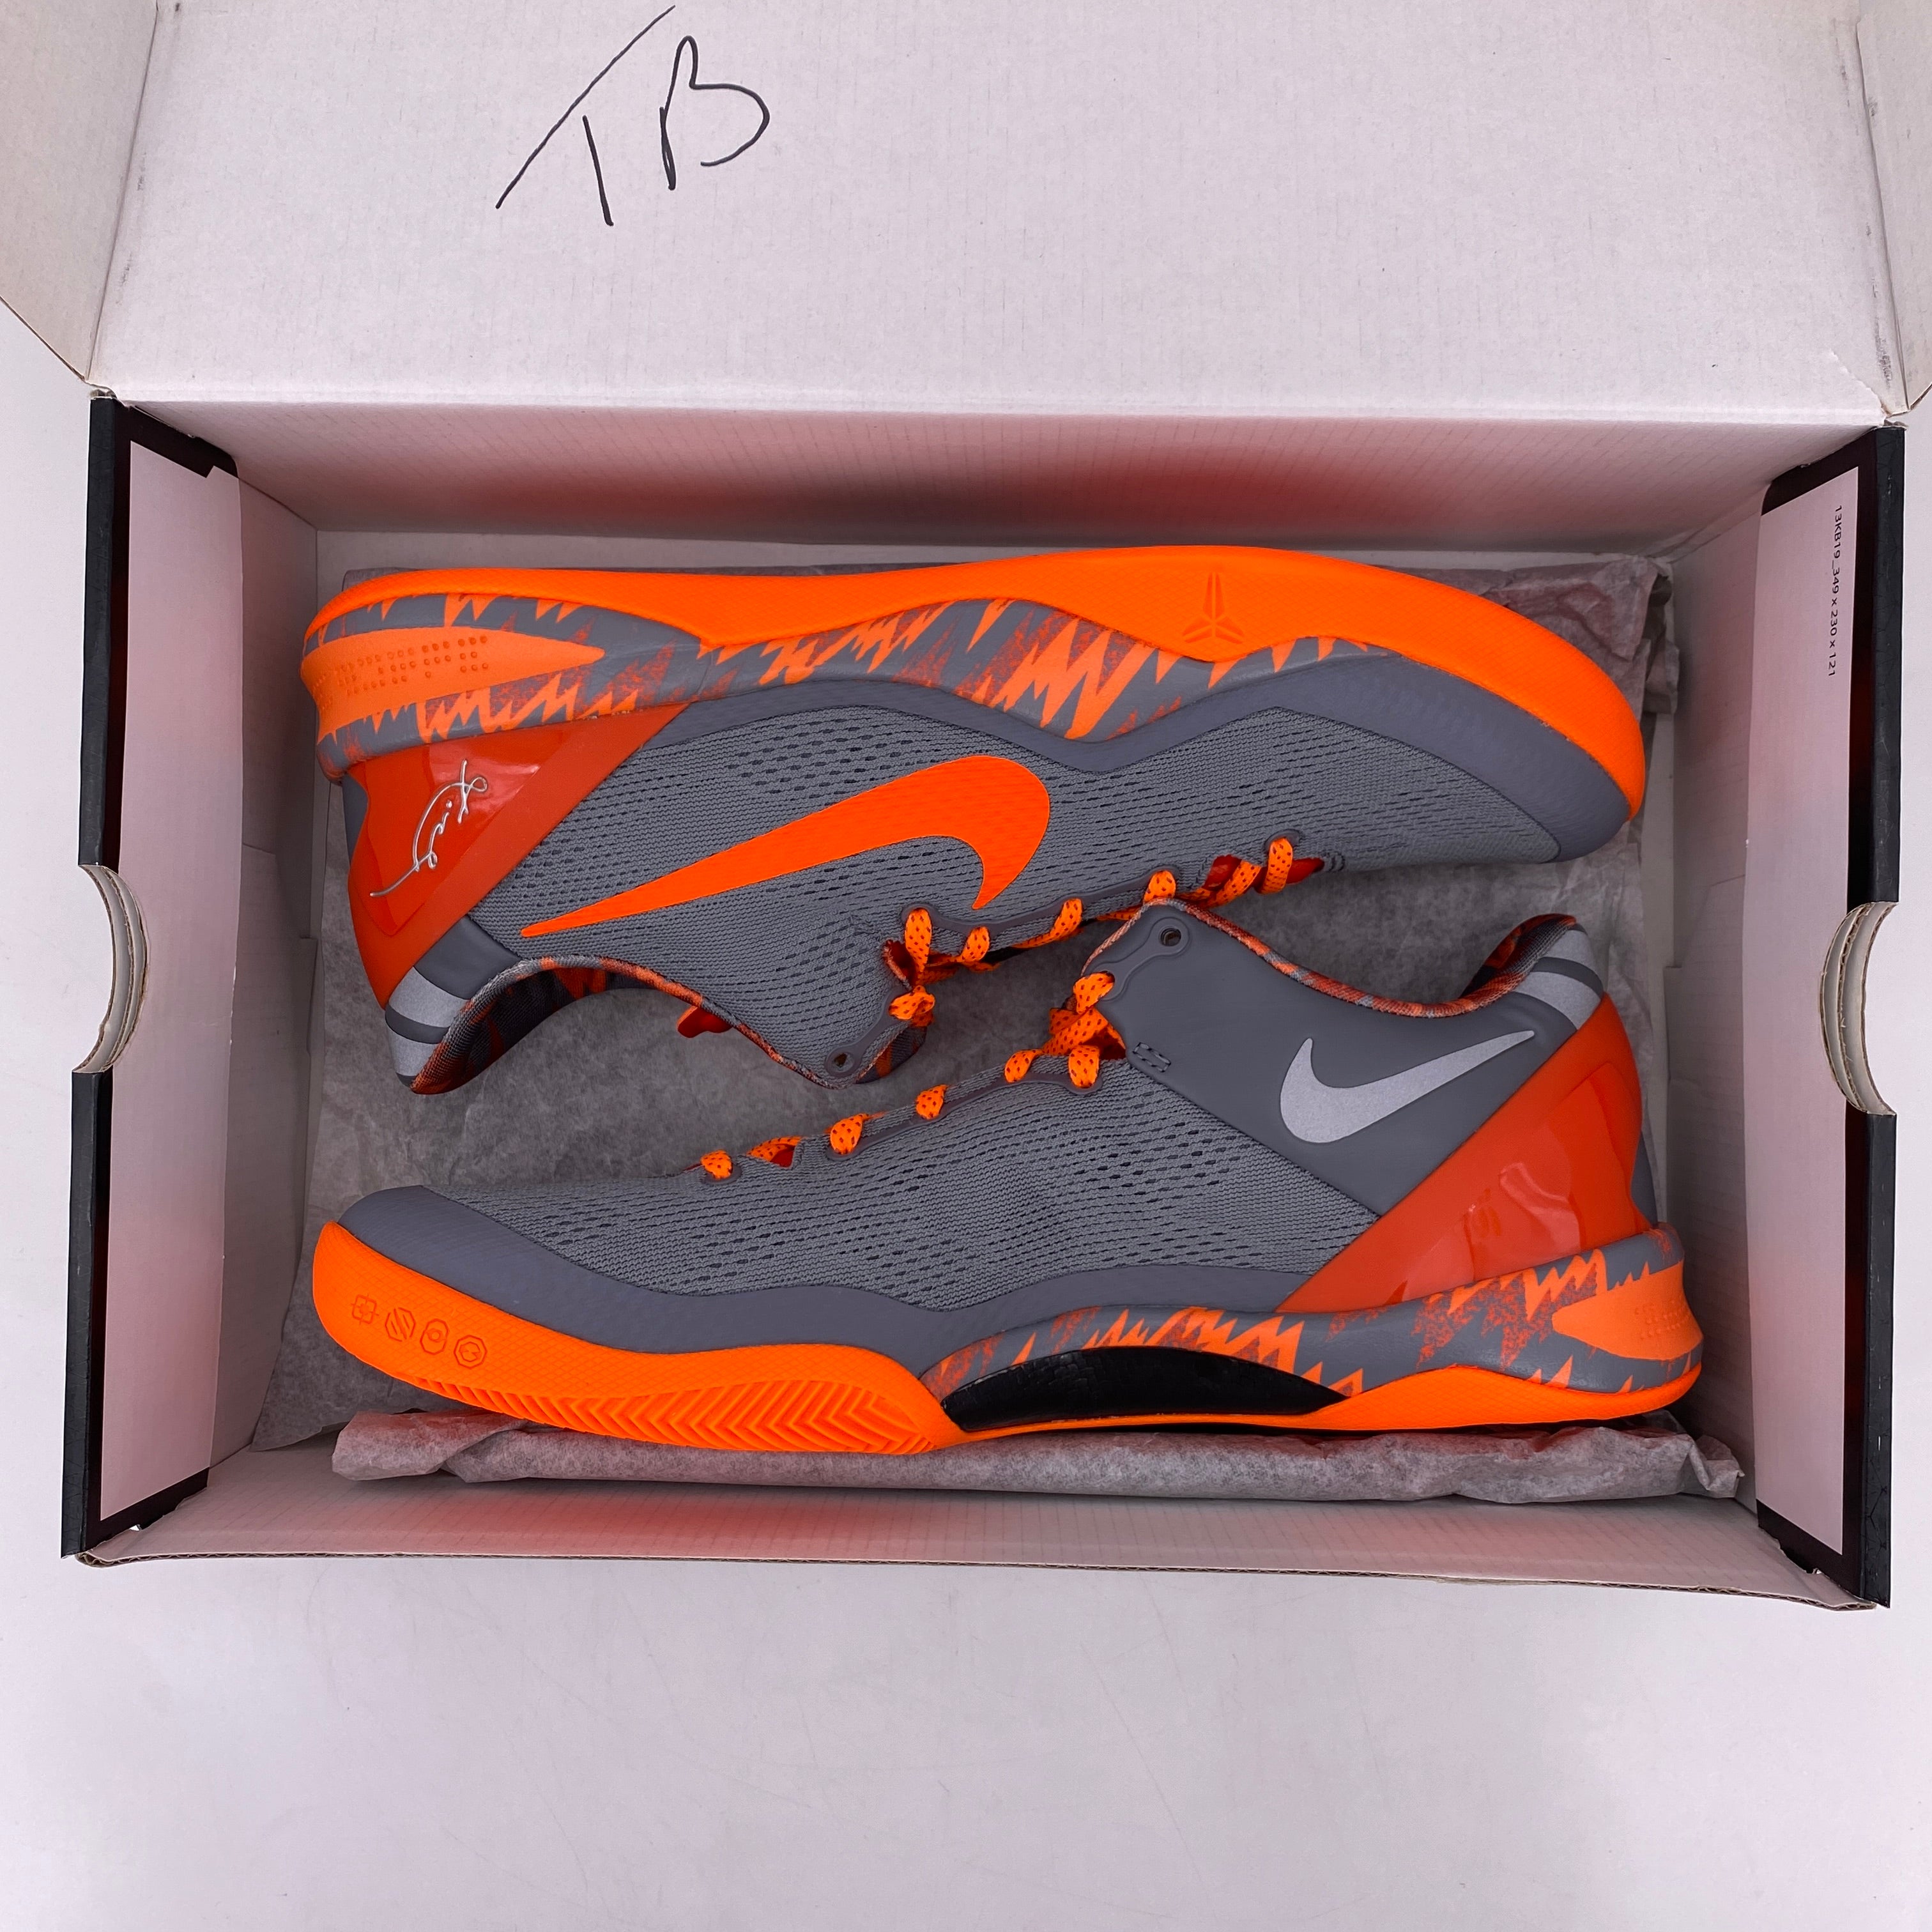 Nike Kobe 8 Protro &quot;Philipppines Grey Team Orange&quot; 2013 New Size 11